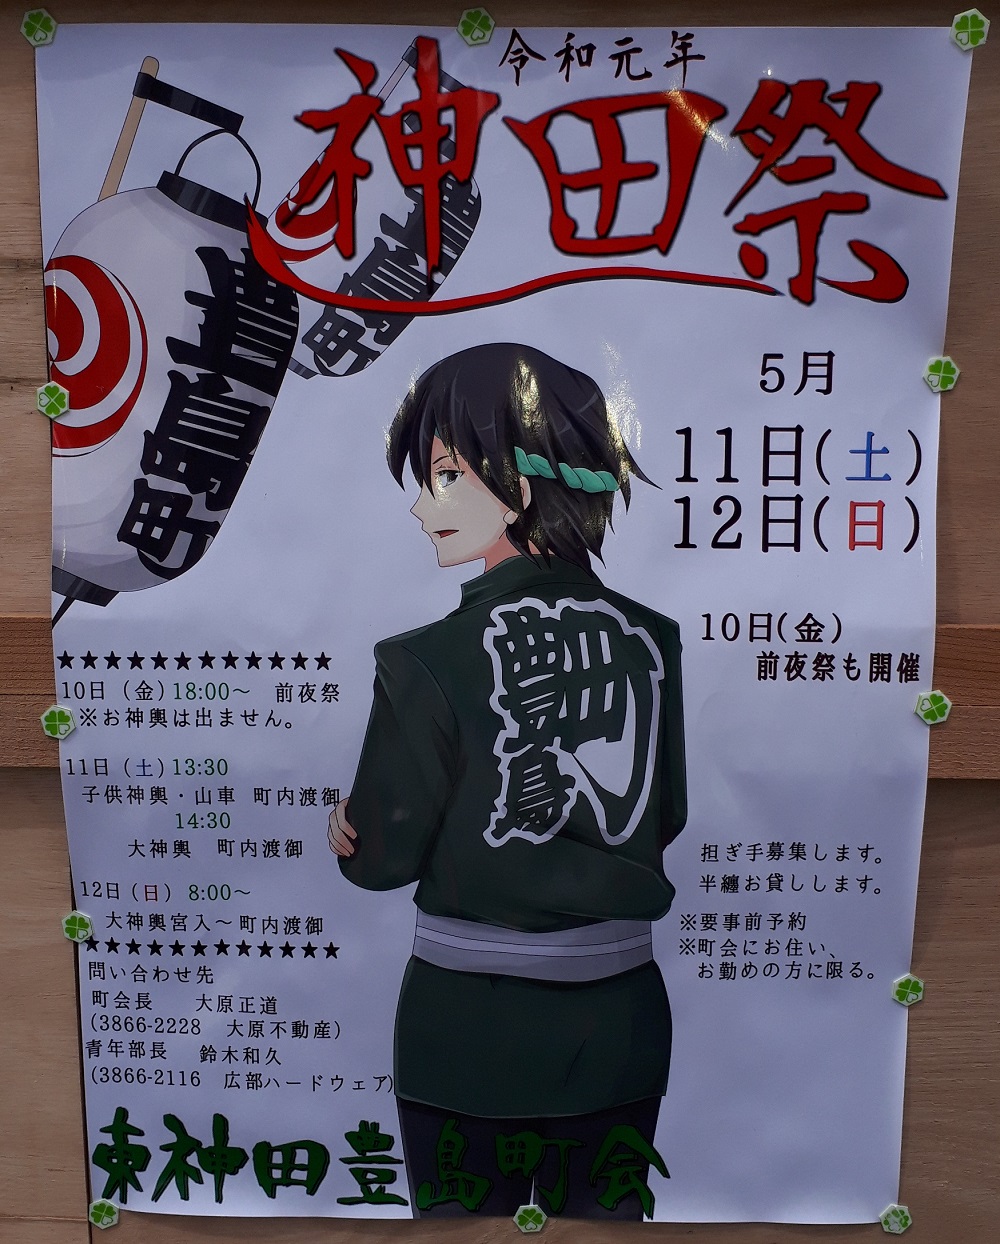 こちらもアニメ風。 神田祭とポスターあれこれ